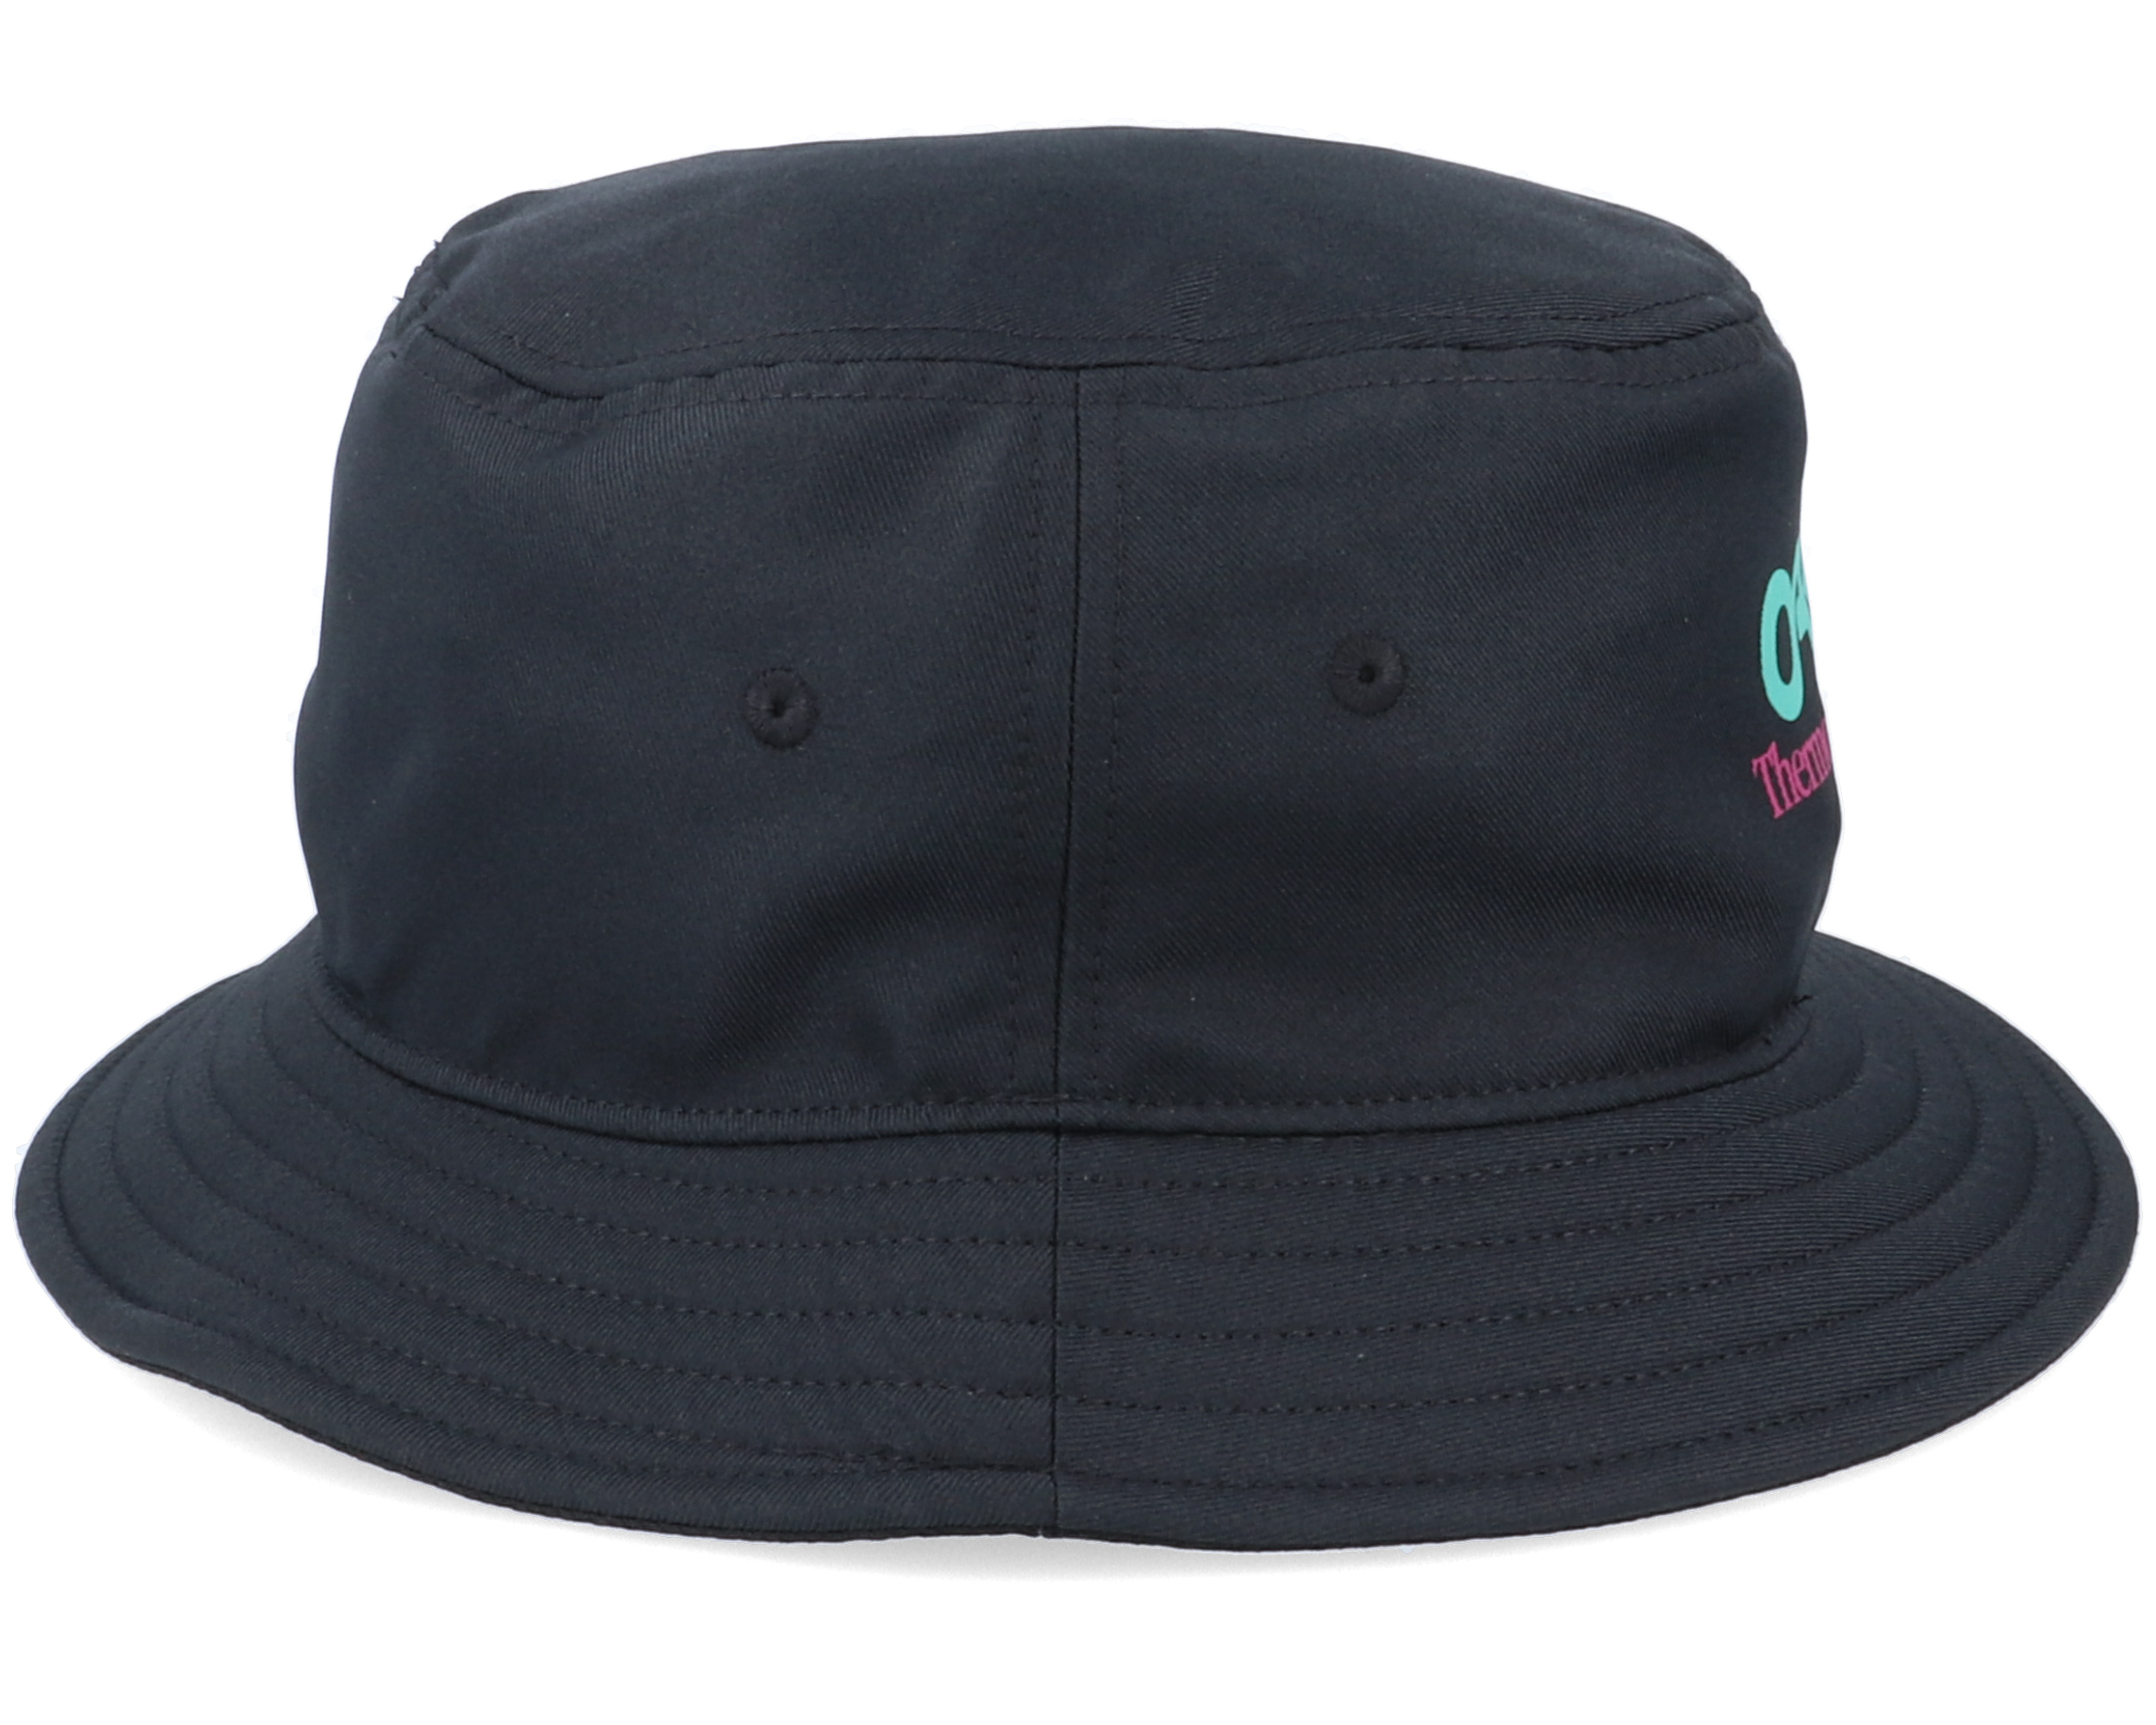 Tnp Fiery Blackout Bucket - Oakley hats | Hatstore.co.uk